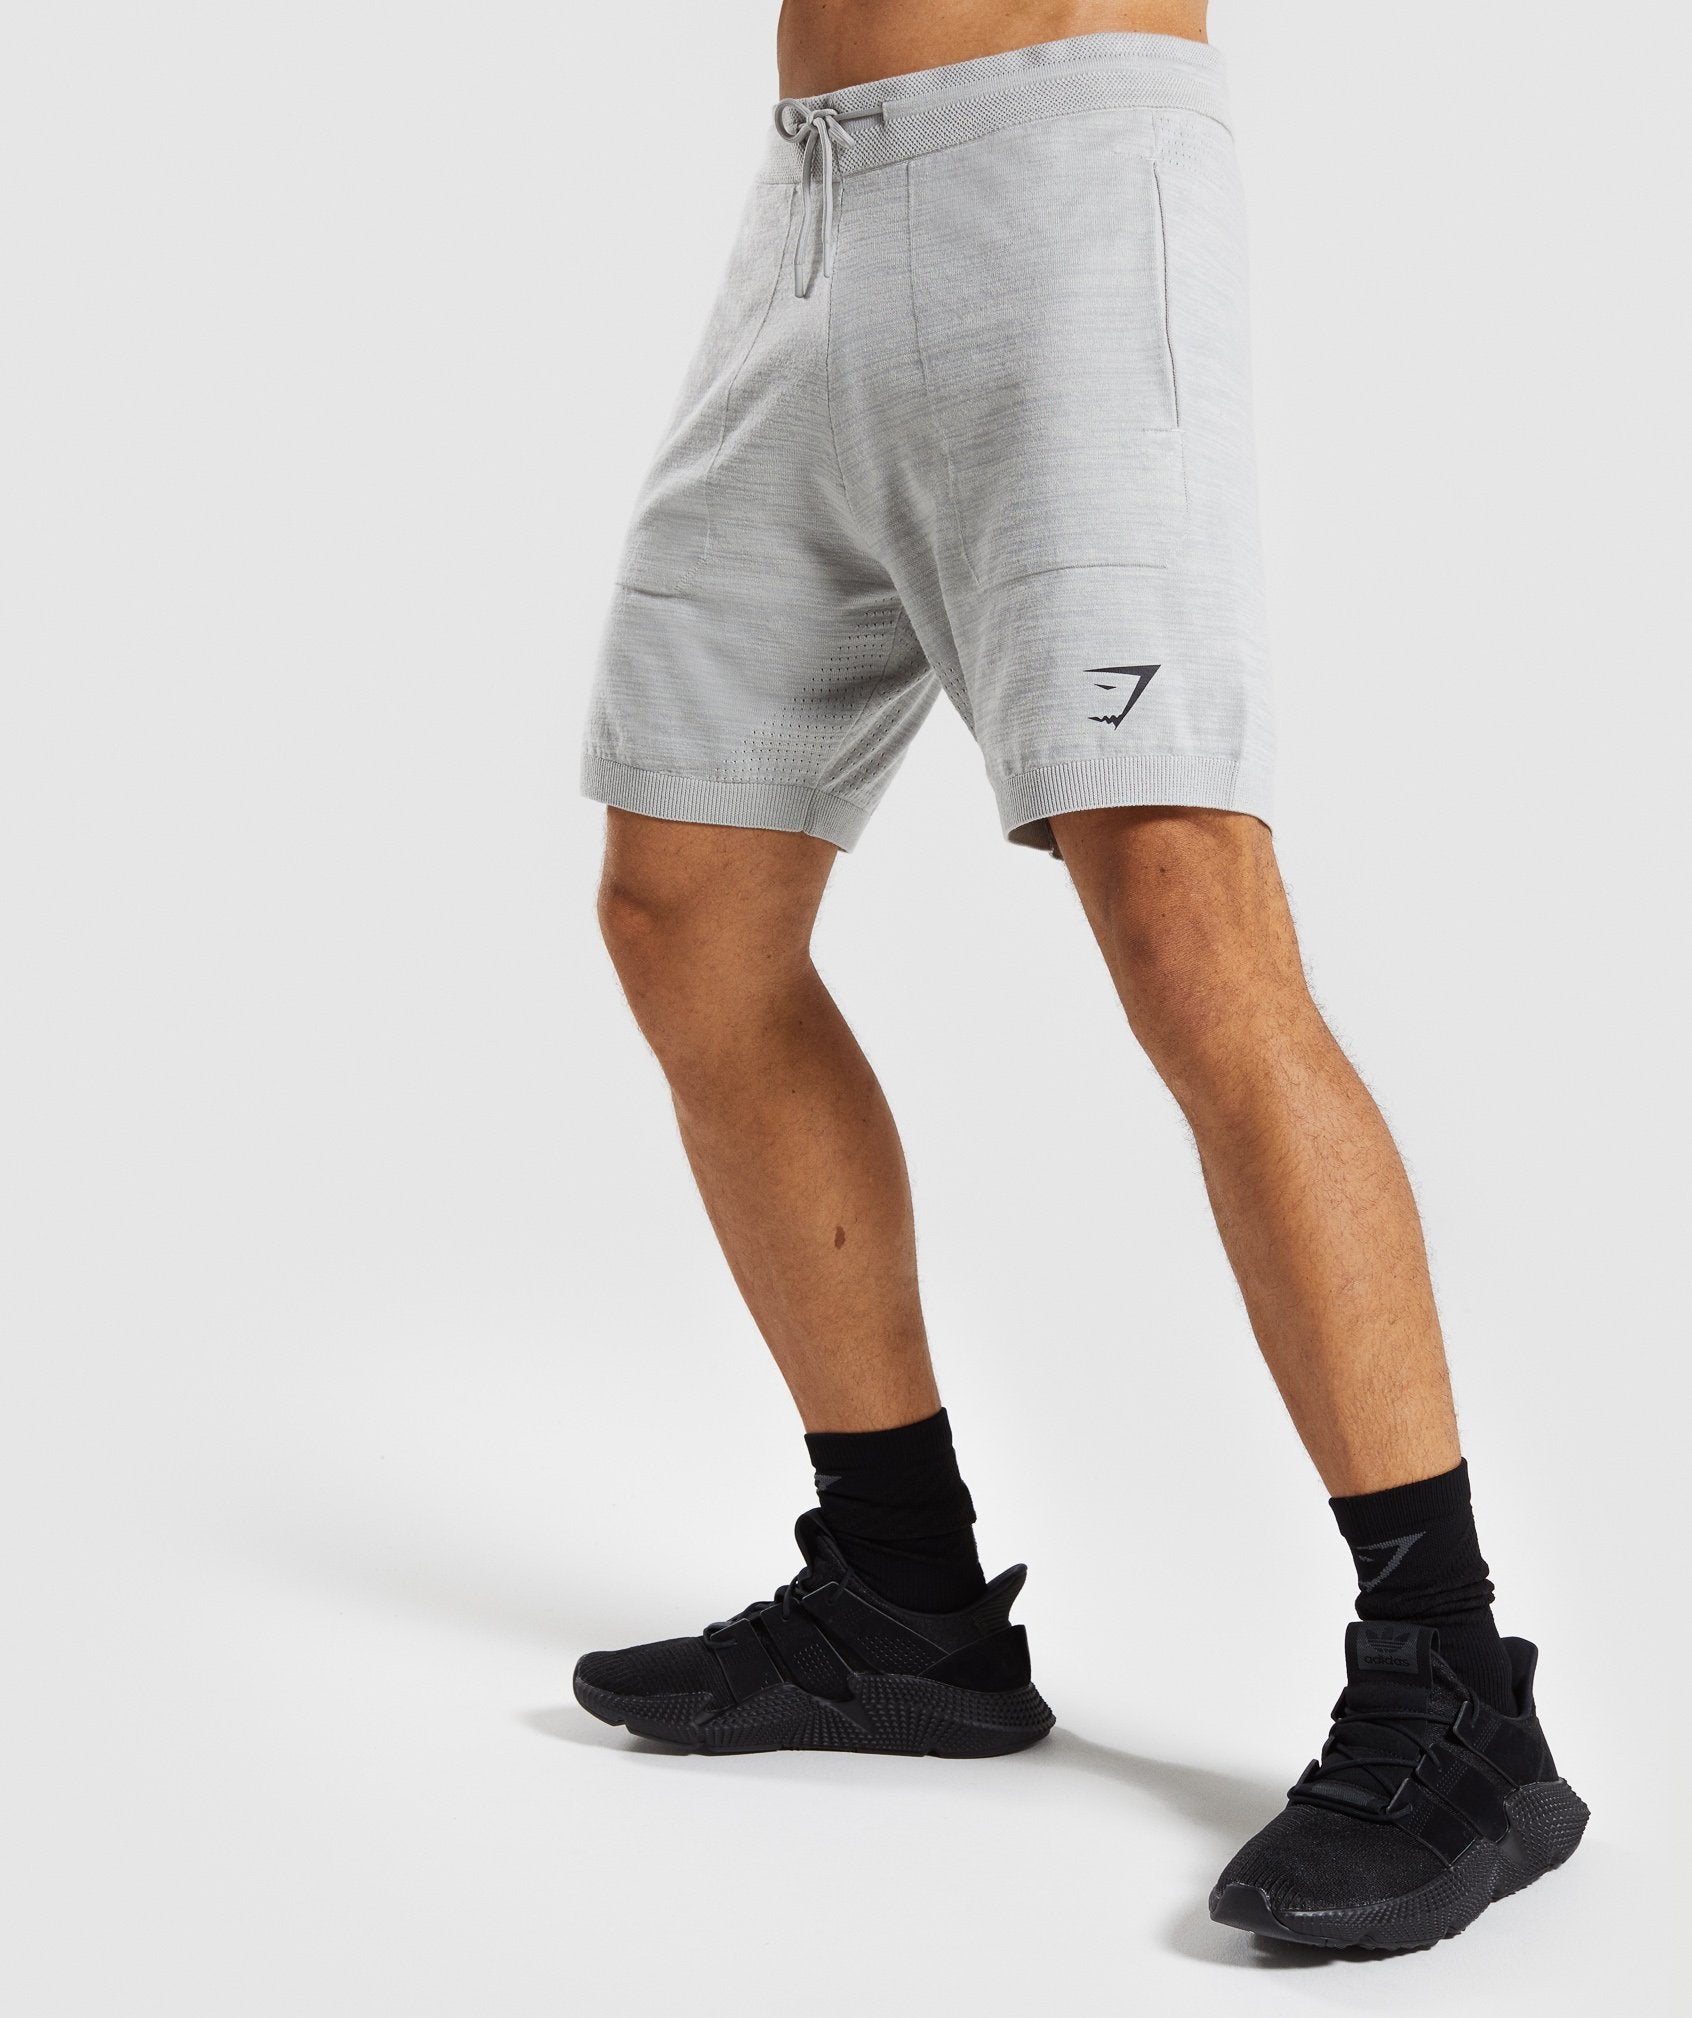 Pinnacle Knit Shorts in Light Grey Marl - view 3